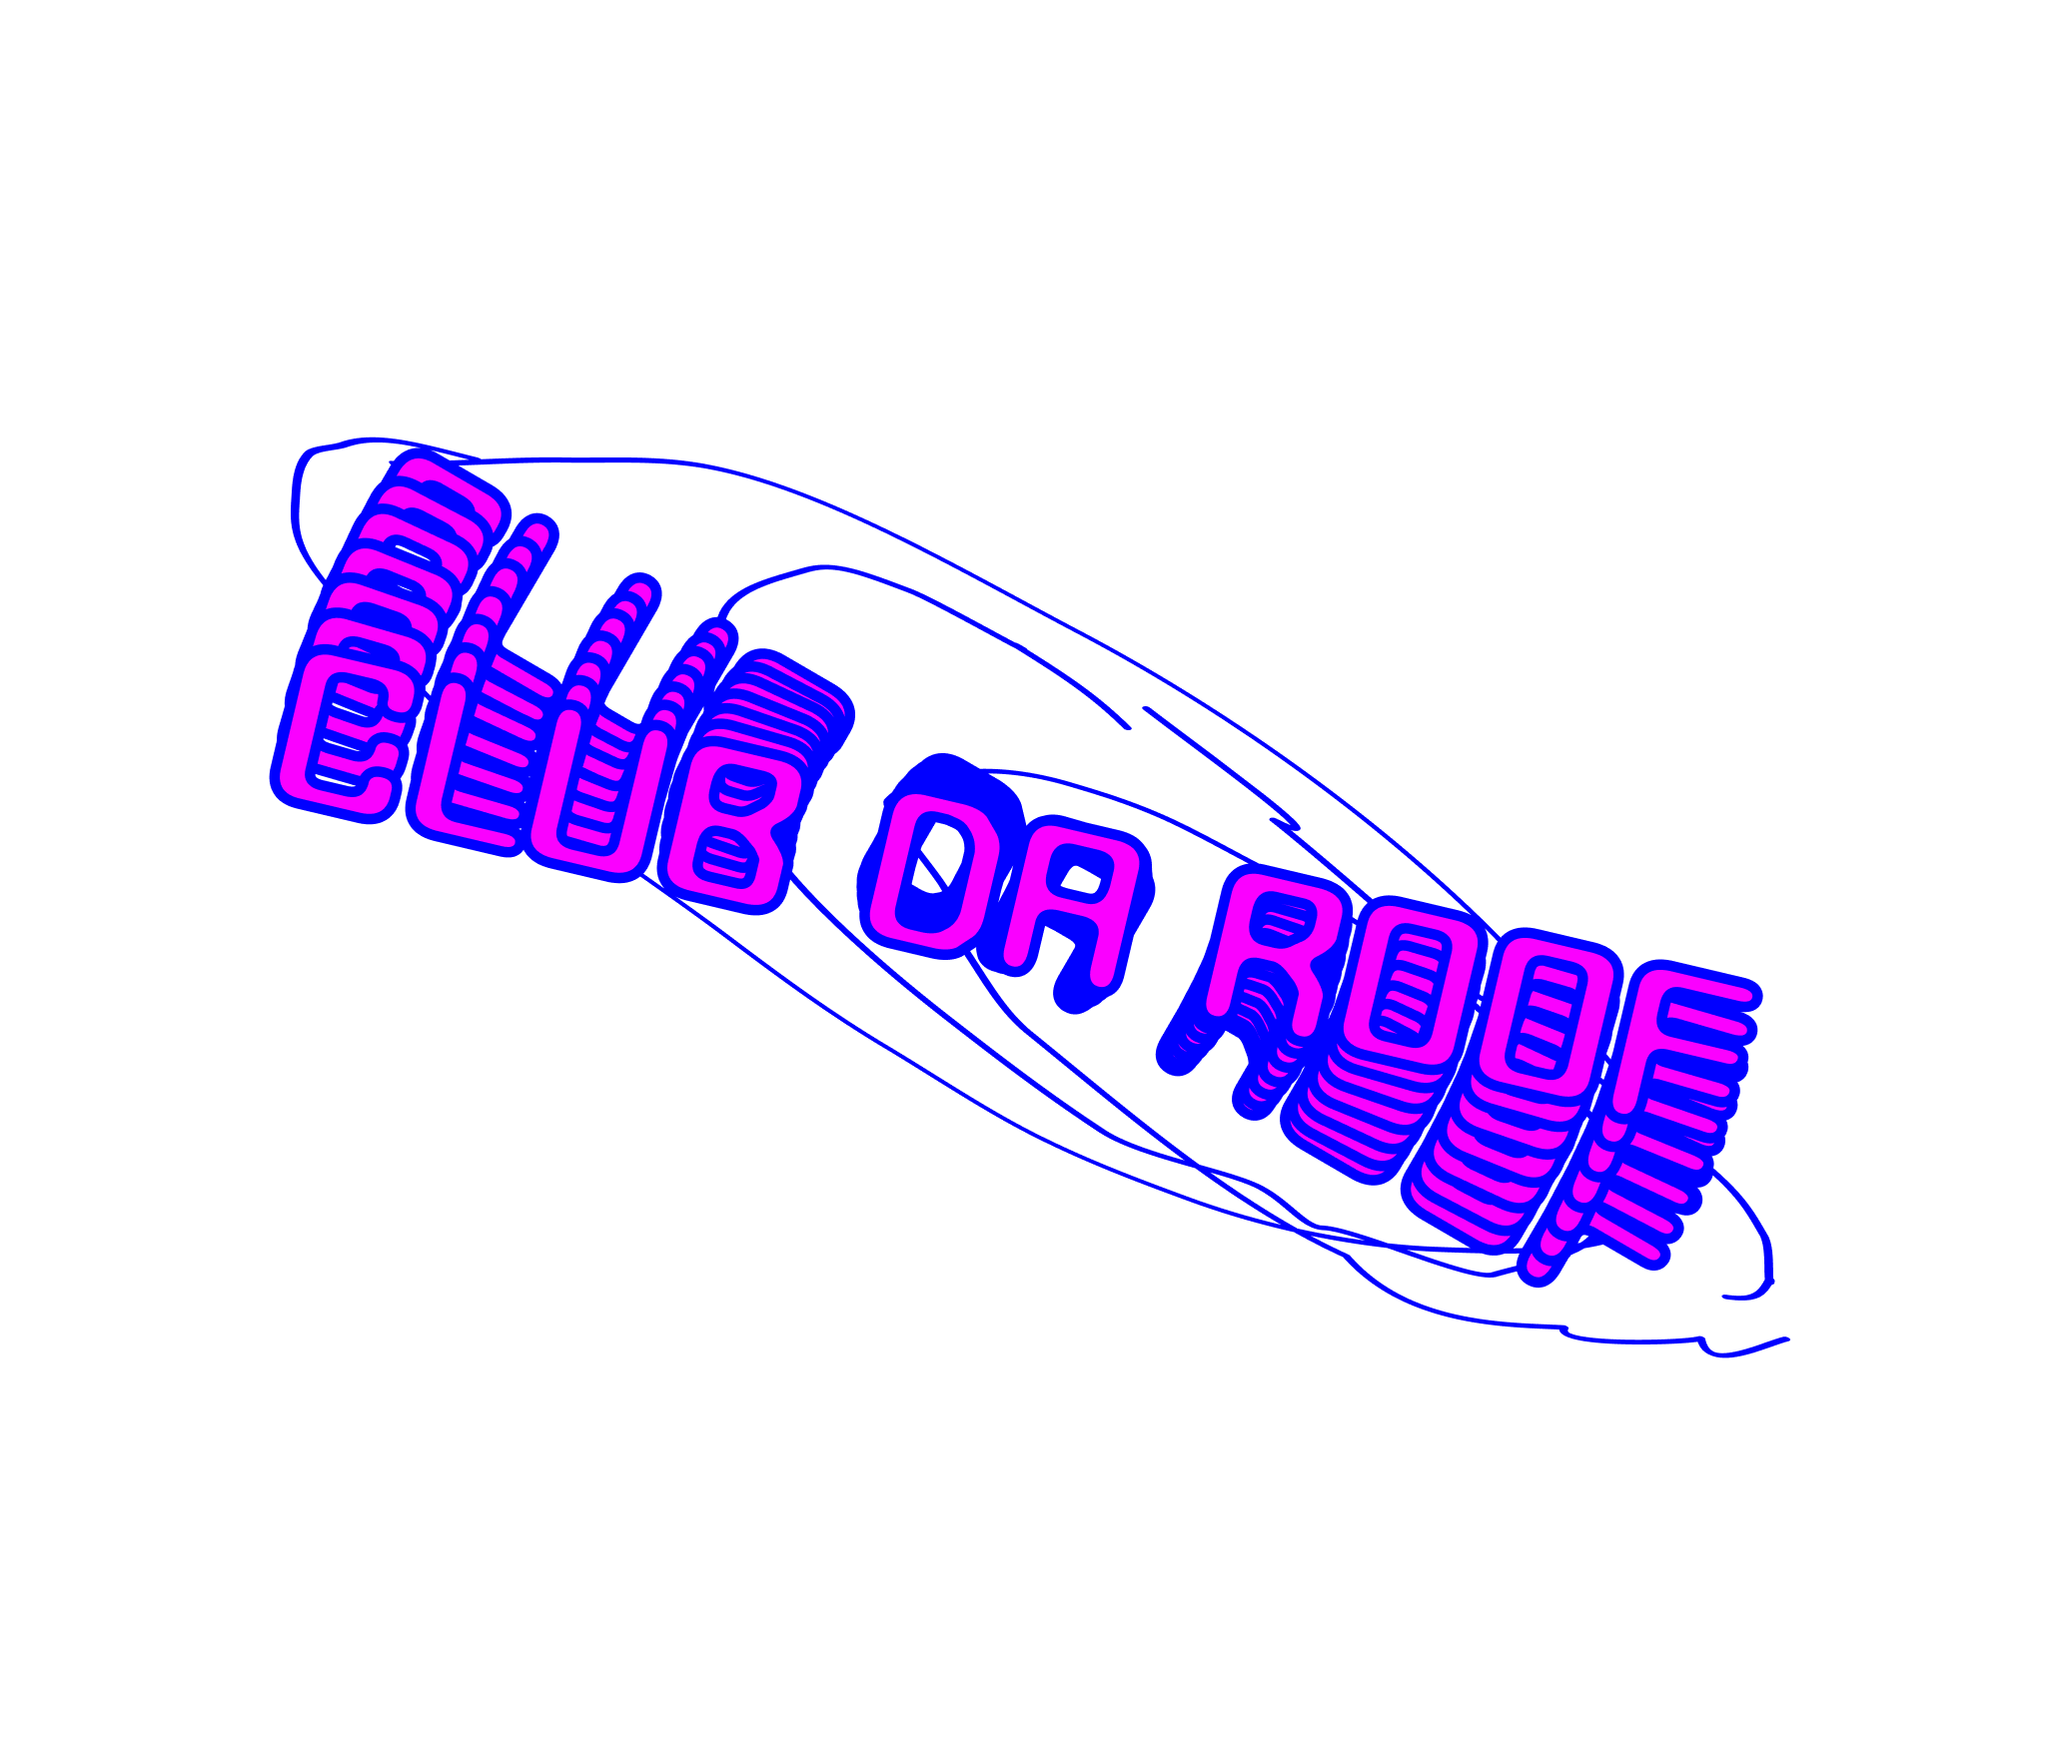 club da roof